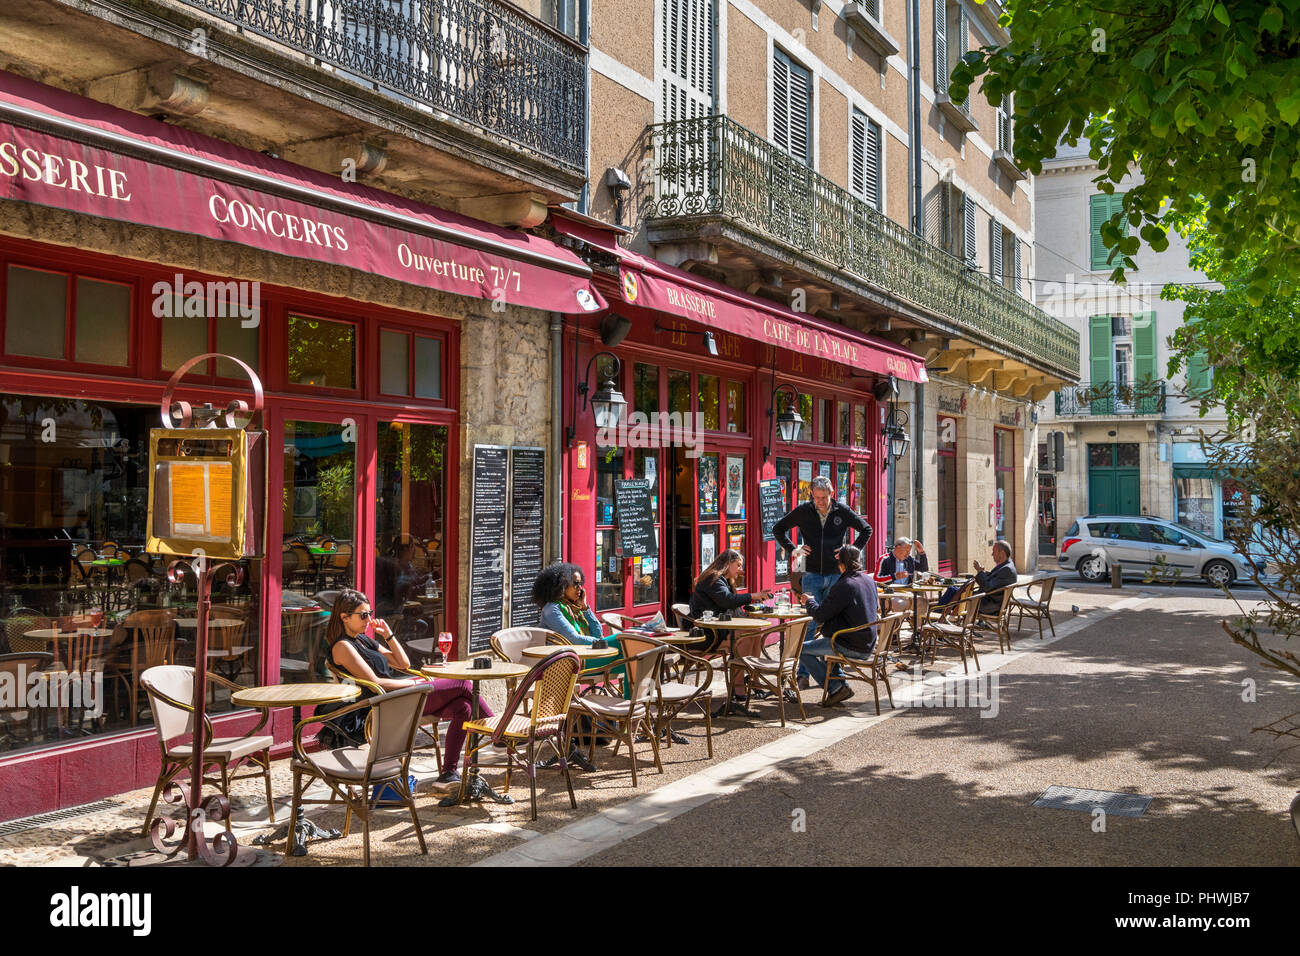 Cafe in der Altstadt, Place du Marché au Bois, Perigueux, Dordogne, Frankreich Stockfoto